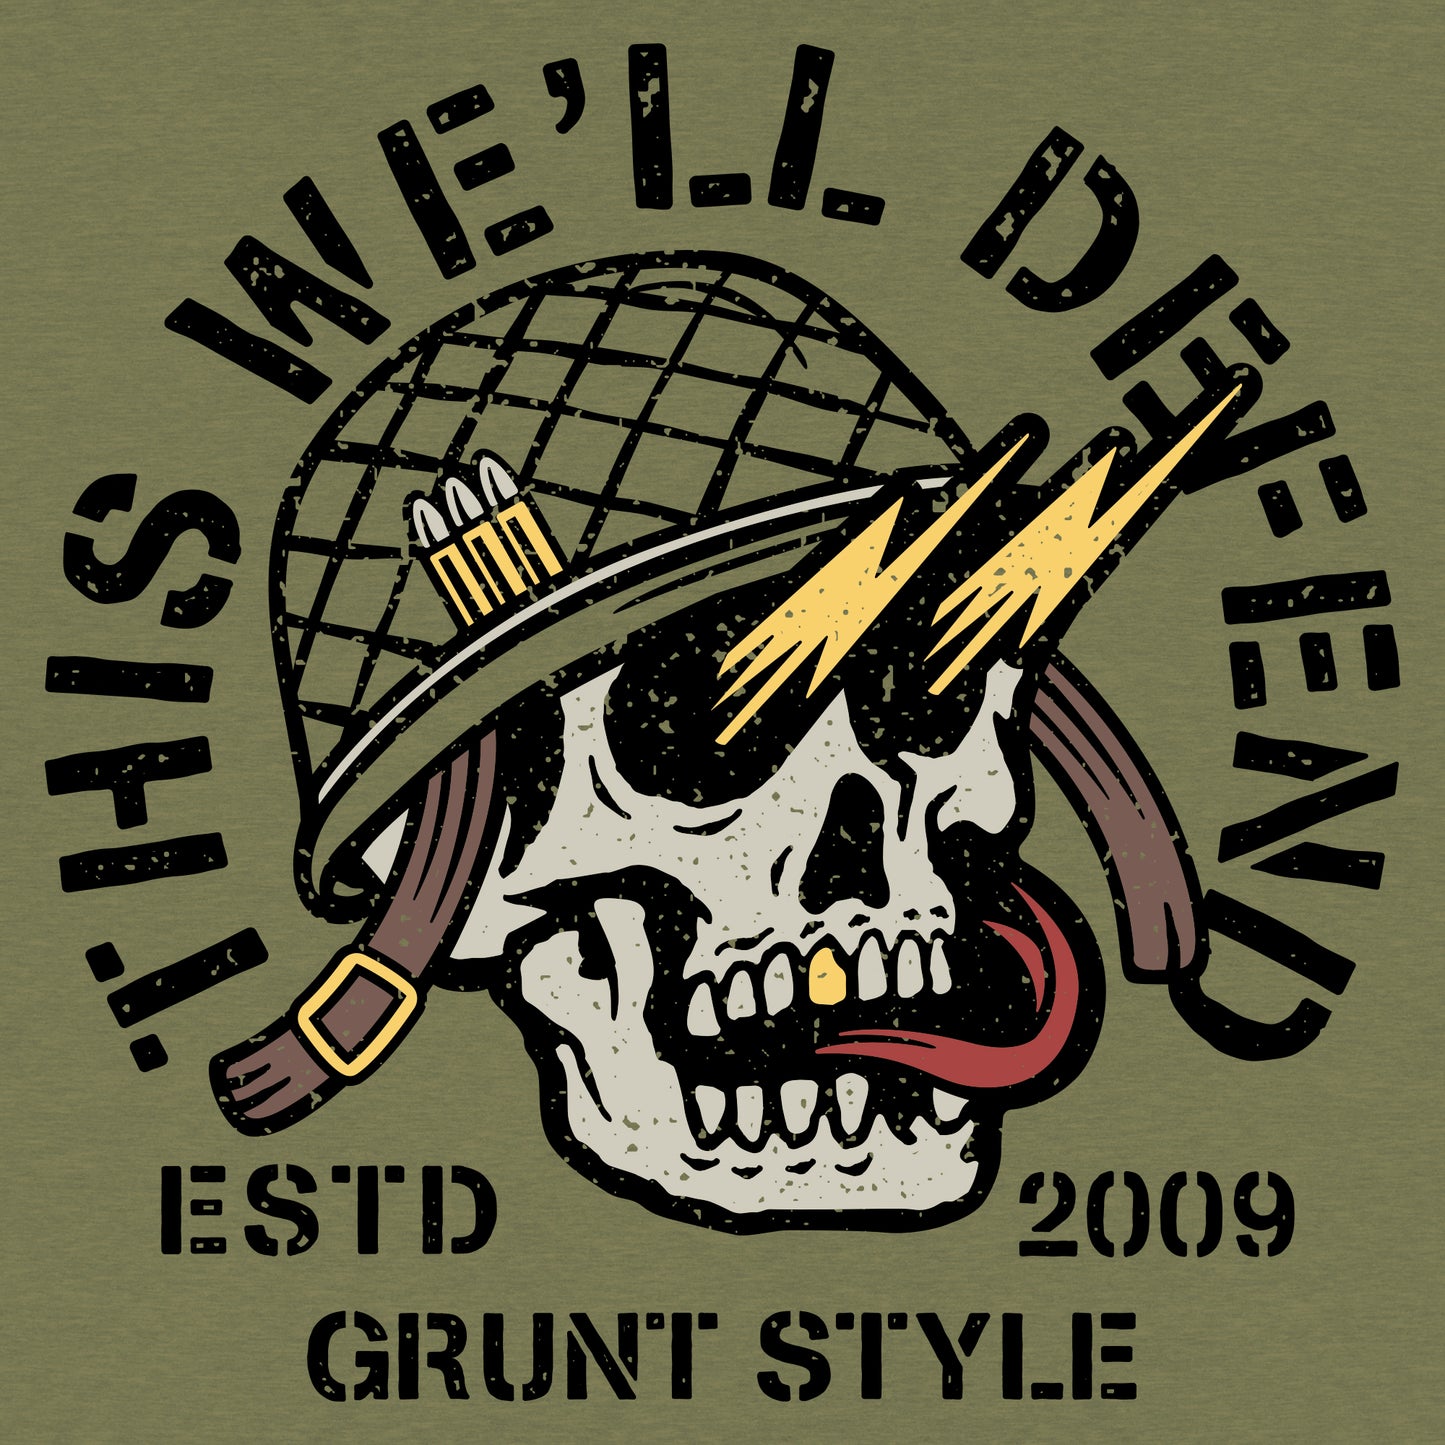 Death Skull - Patriotic Shirts